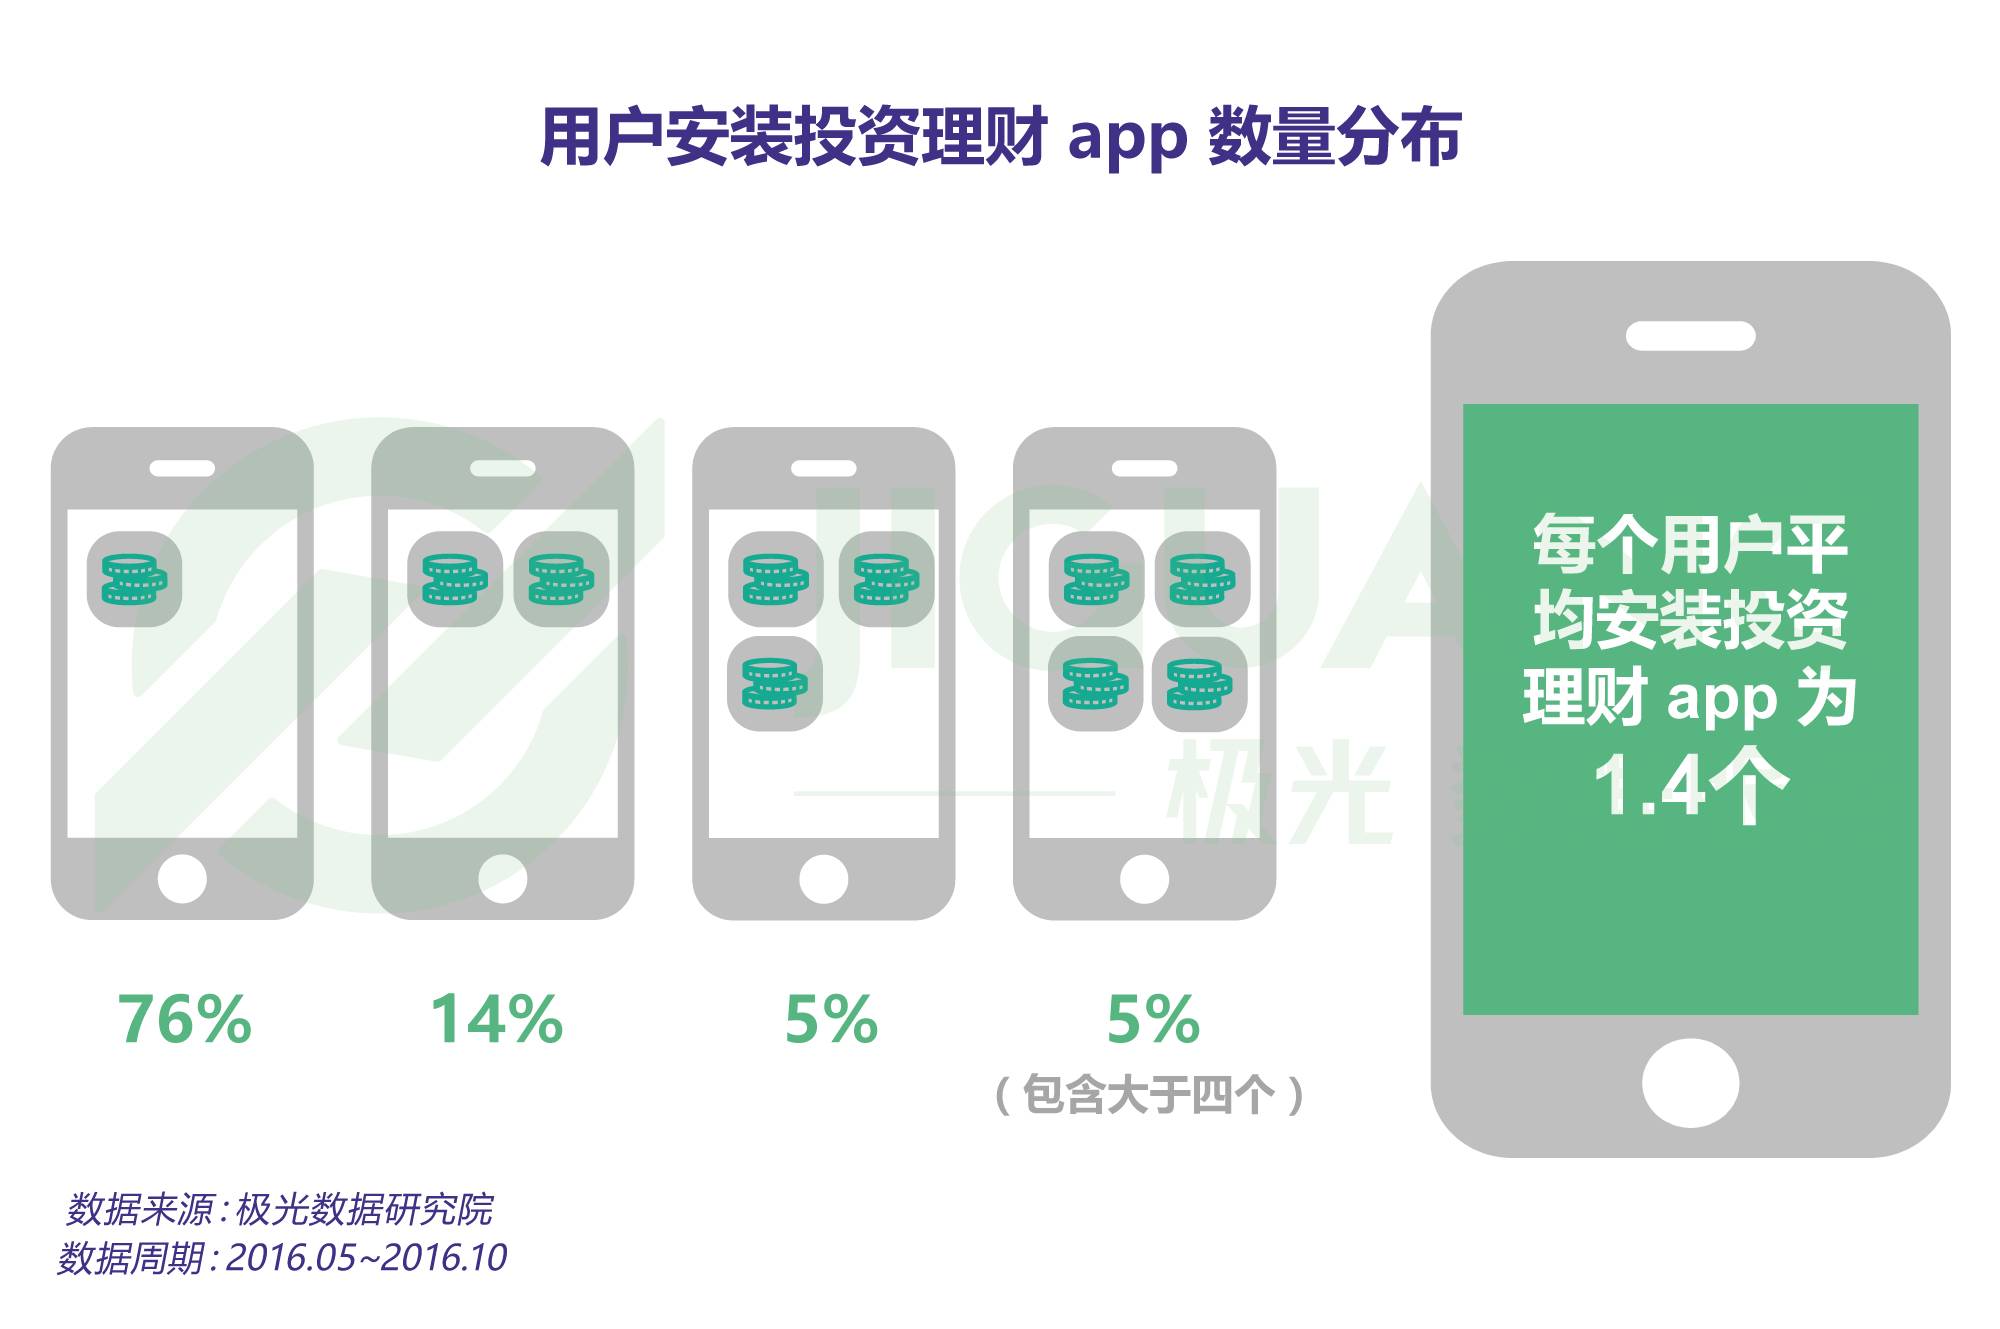 投资理财 app 研究报告：10%的用户用三款以上 app 来增强收益